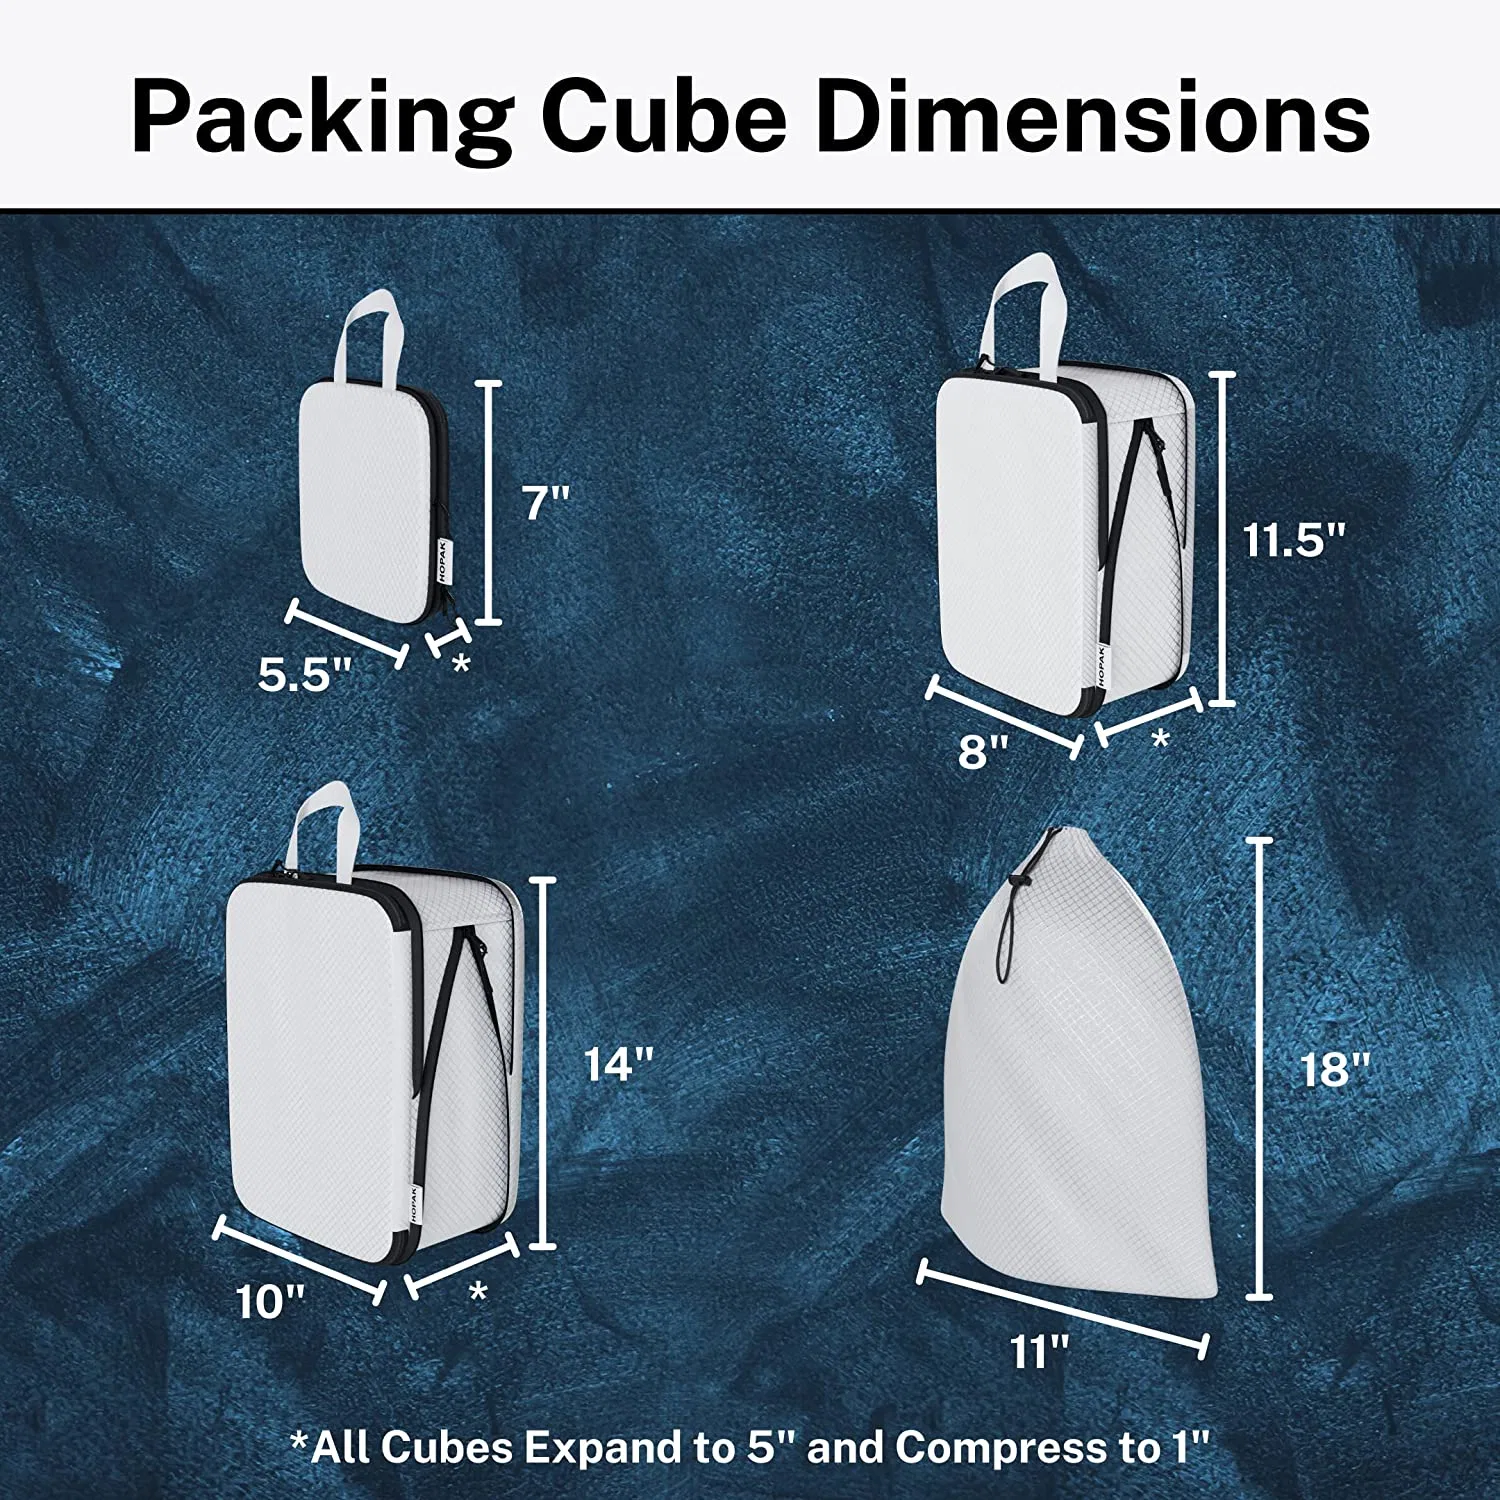 CONJUNTOS de bagagem DE 3 UNIDADES com saco com cordão - compressão dupla de fecho Cubos de embalagem do sistema para cubos de Viagem - armazenamento